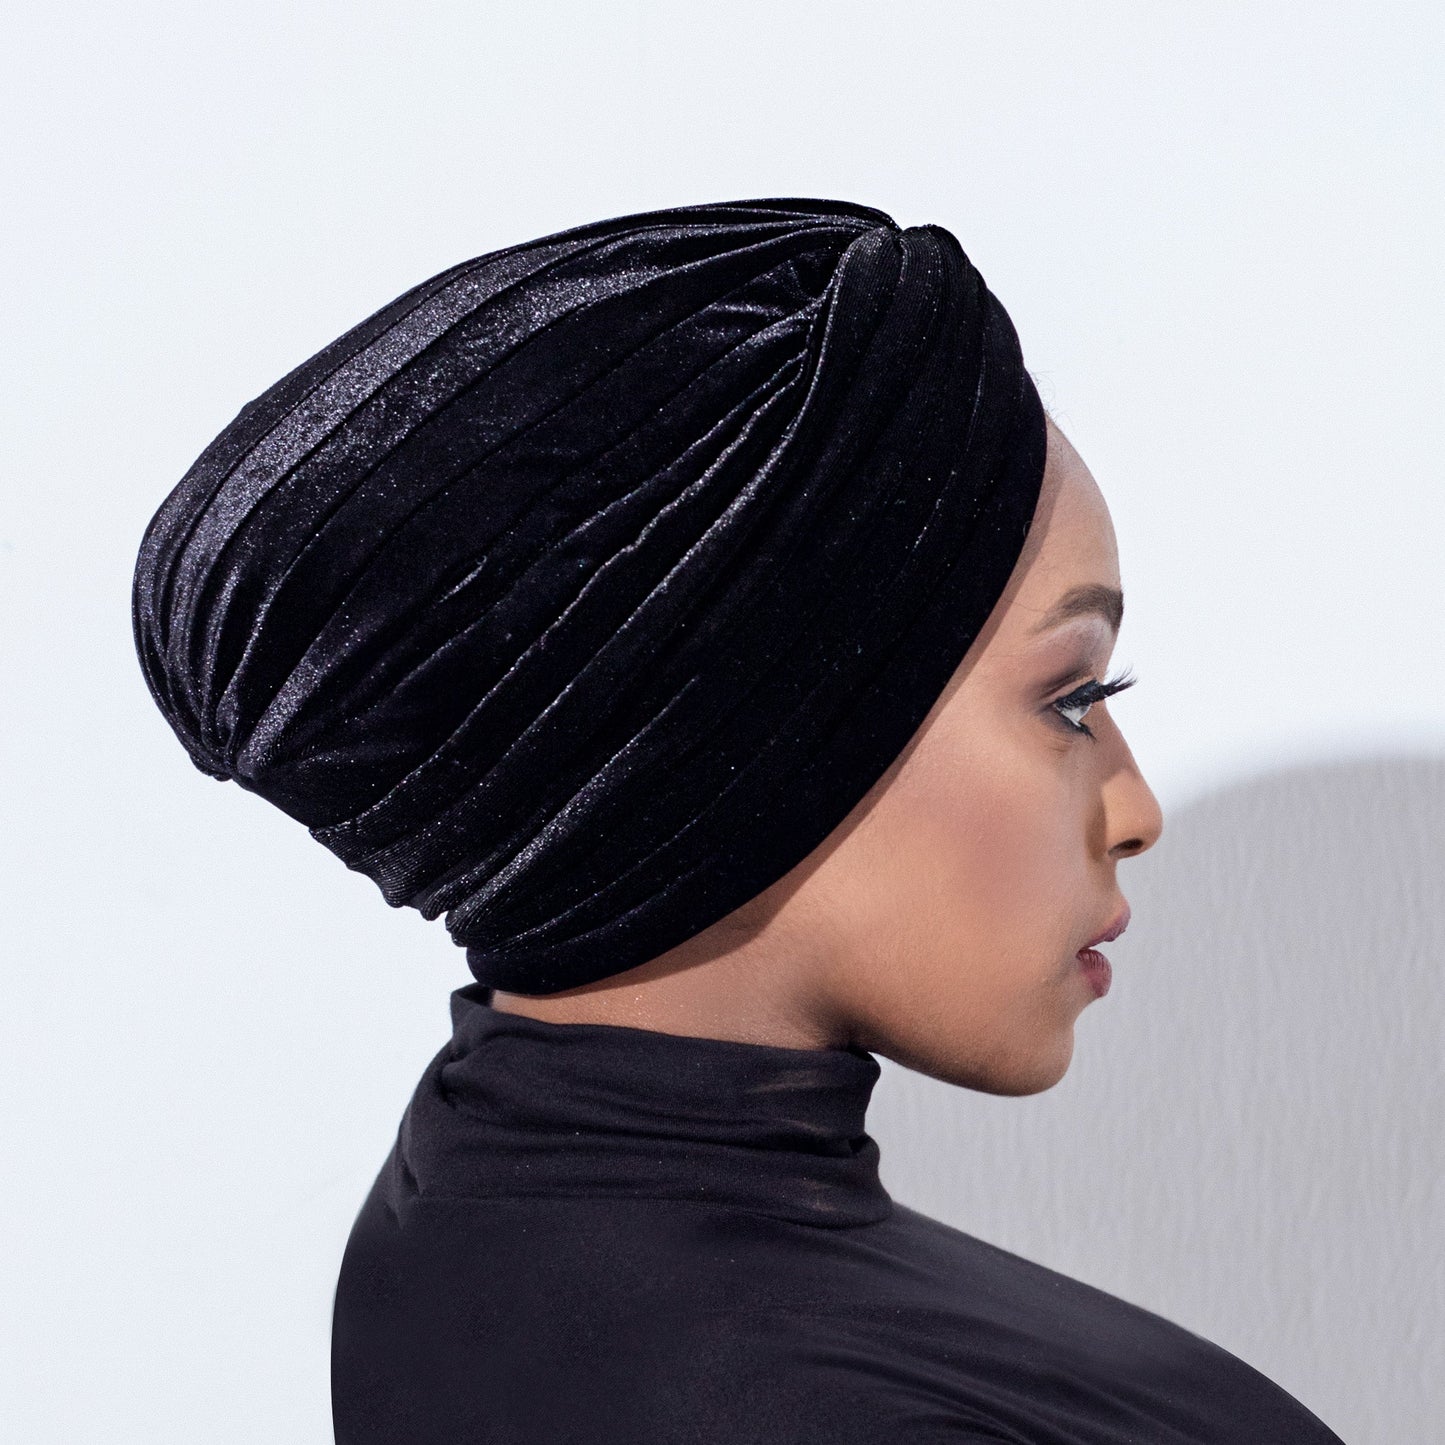 Black velvet turban